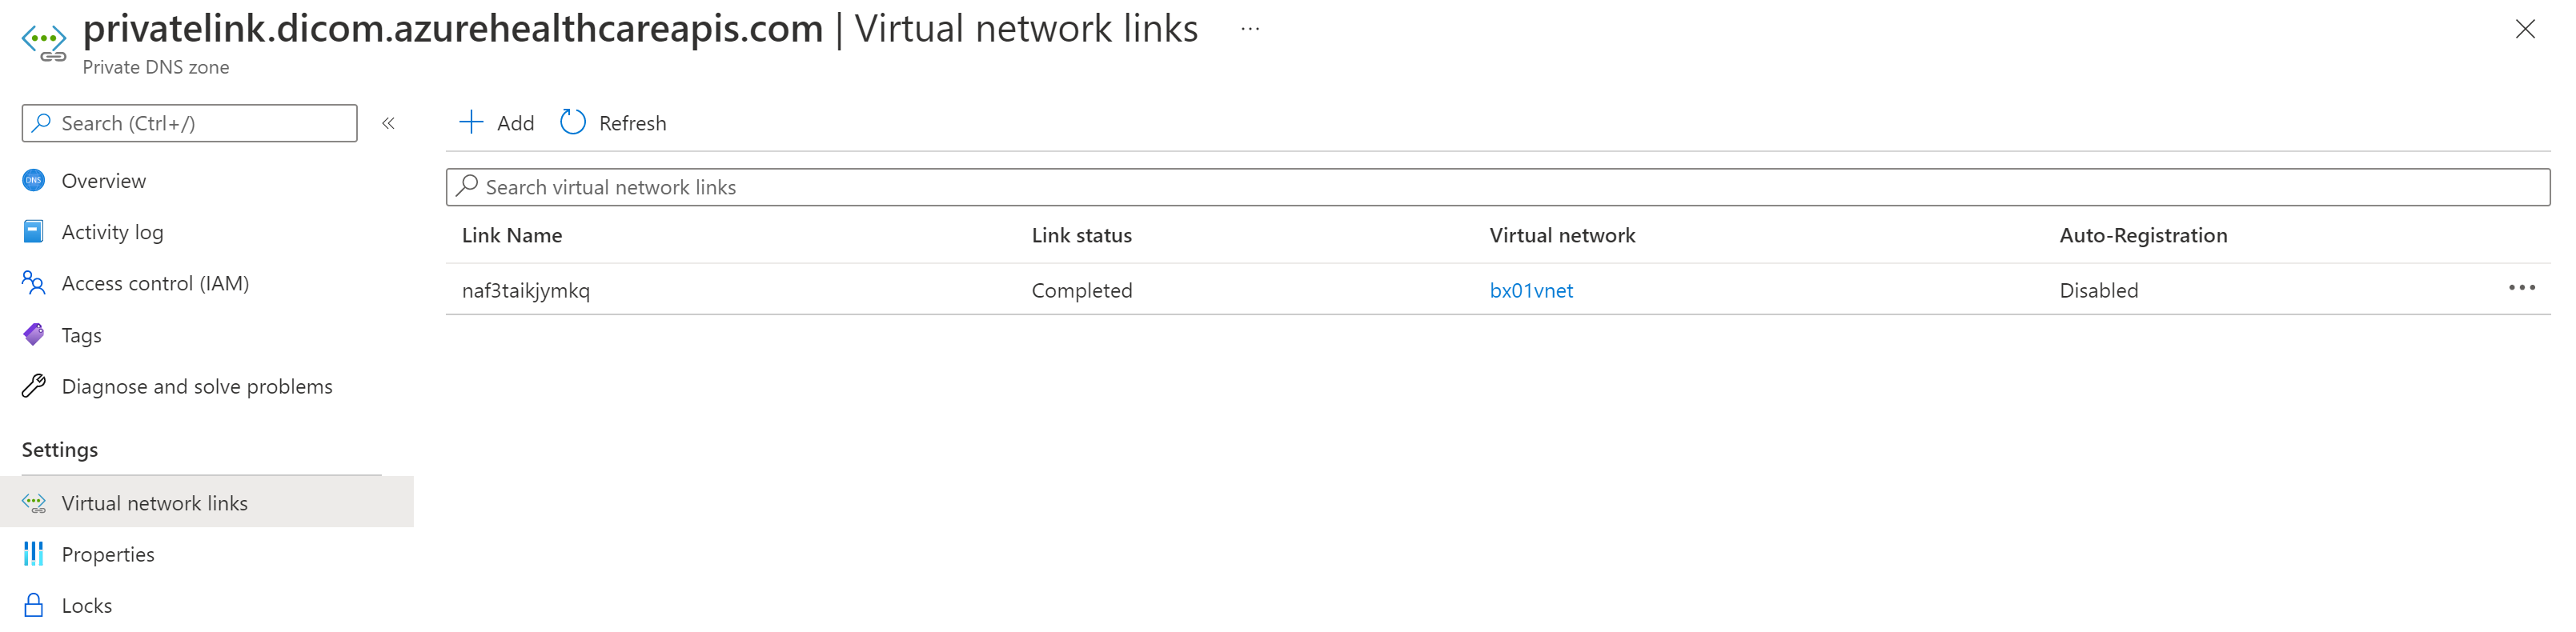 Schermopname van de afbeelding van Private Link Virtual Network Link DICOM.